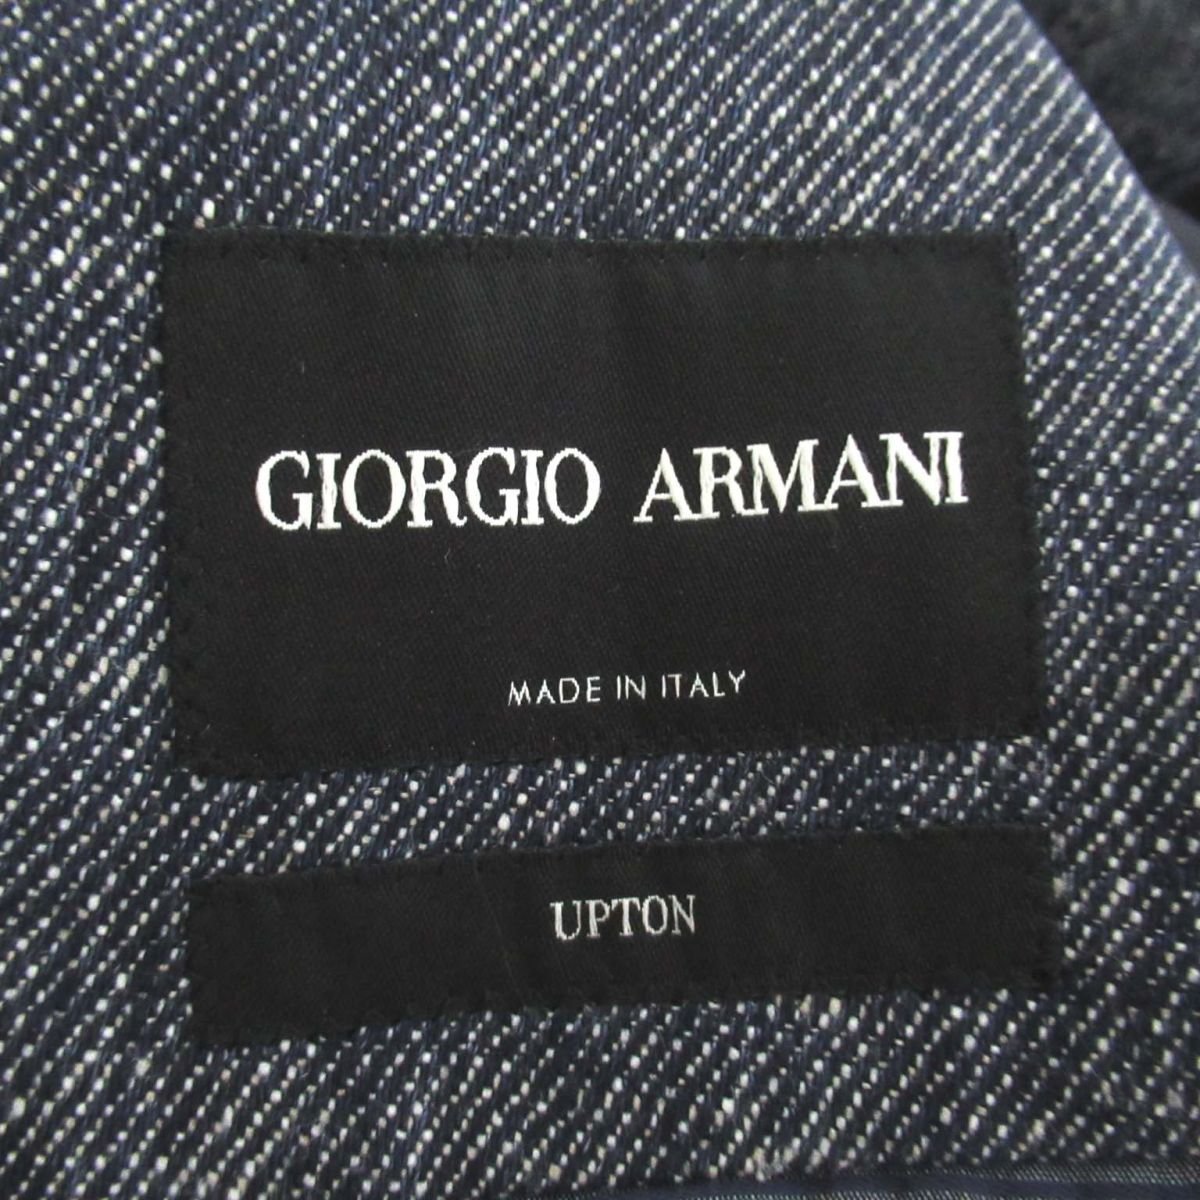  прекрасный товар 21SS GIORGIO ARMANIjoru geo Armani UPTON двойной linen хлопок tailored jacket 46R темно-синий серия C0801